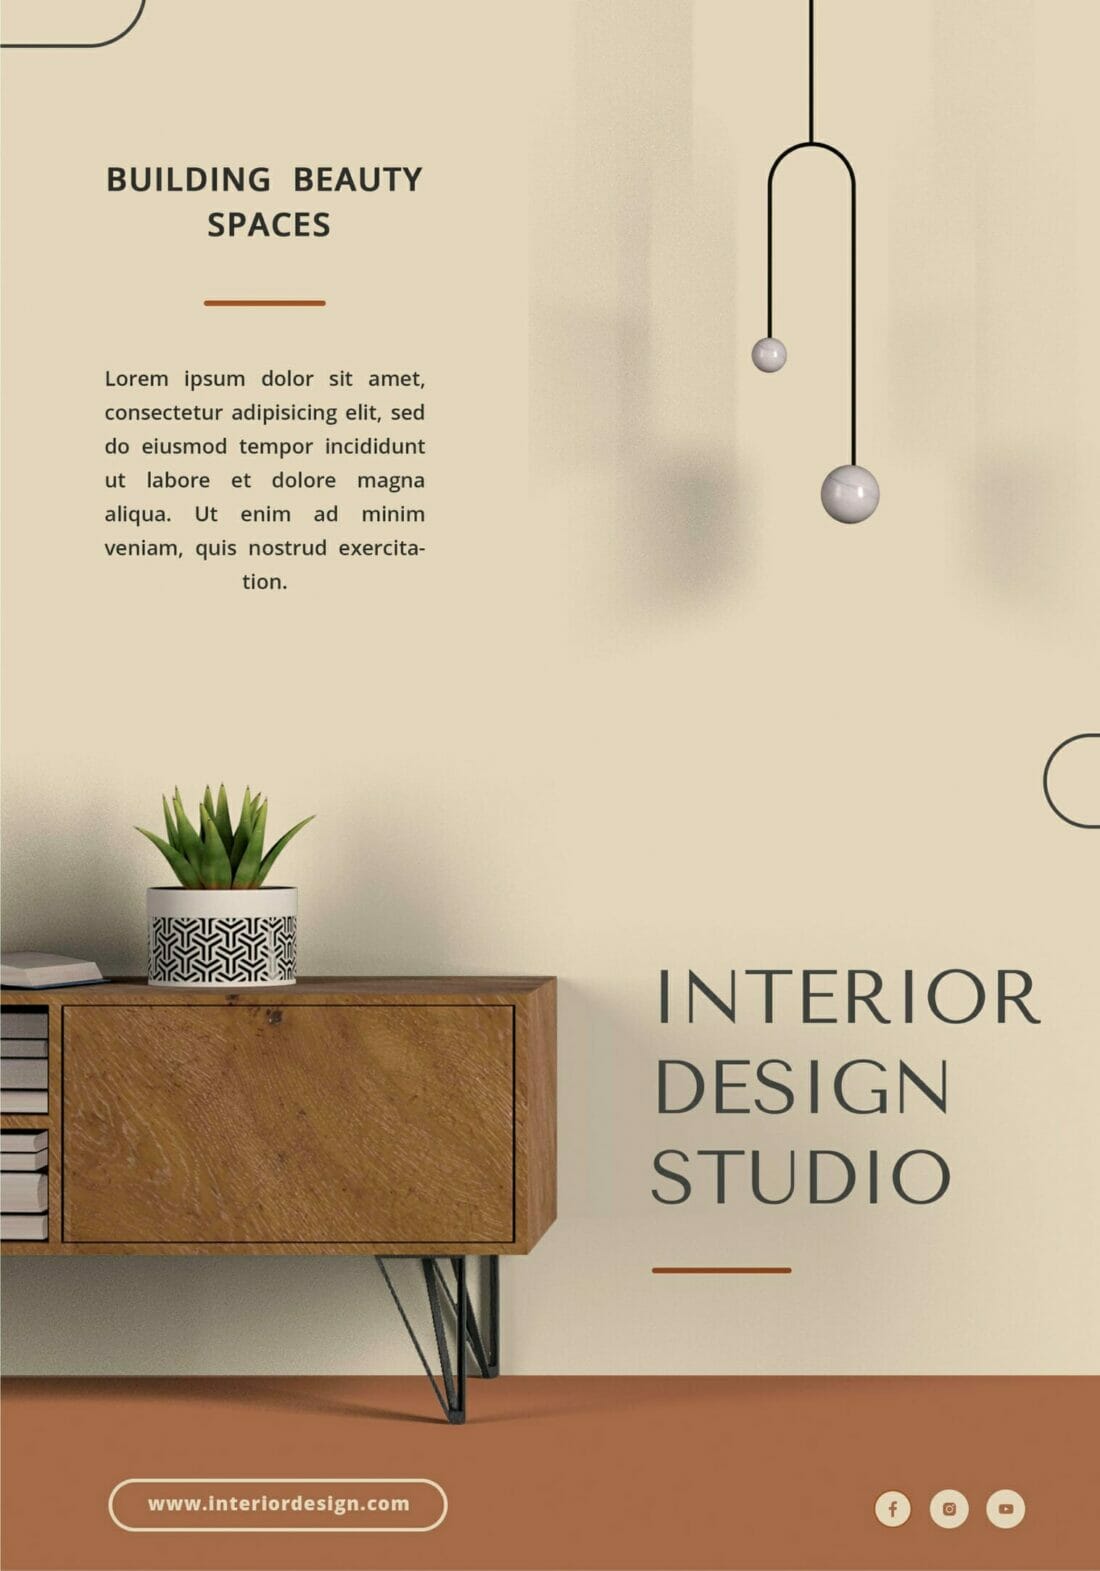 Website Design Perth